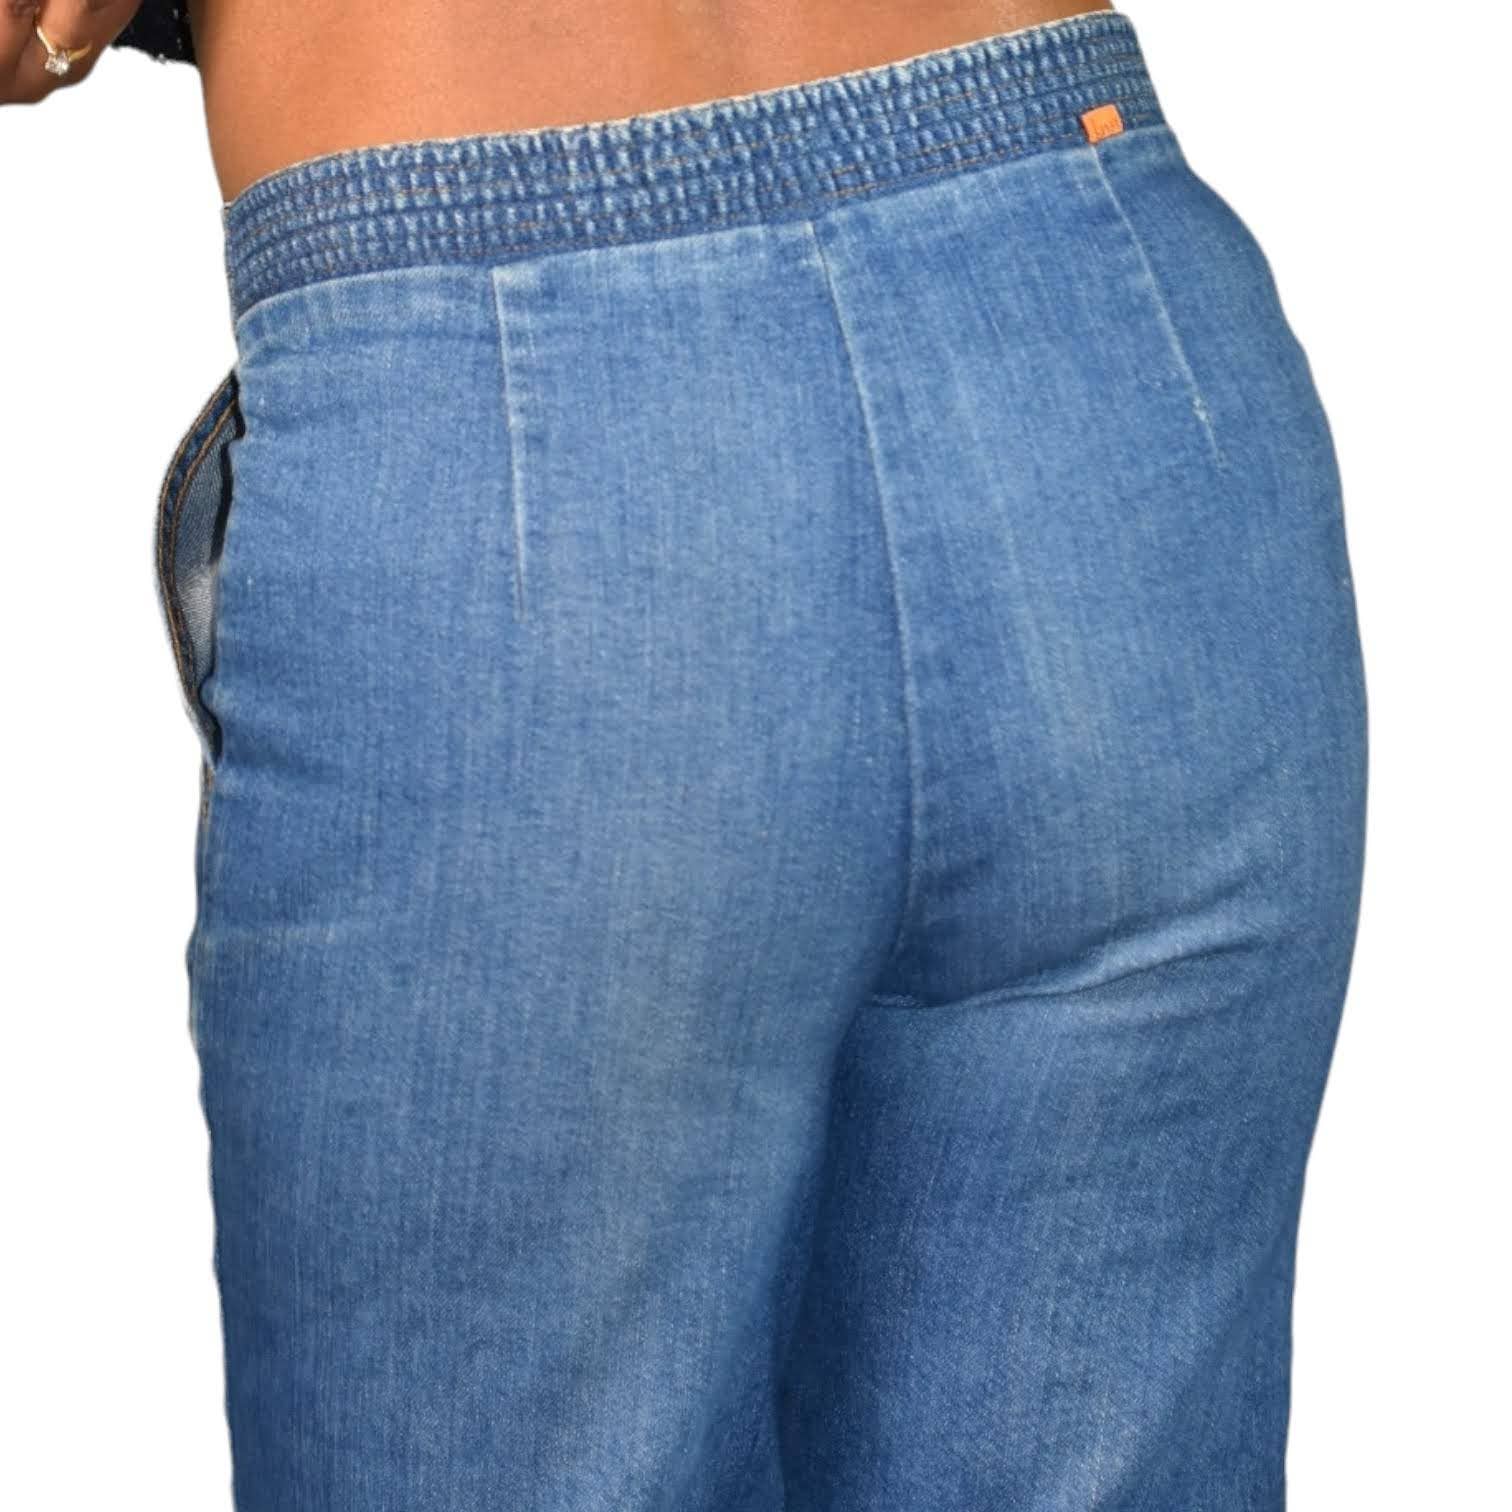 Vintage Levis Jeans Orange Tab Wide Leg Trouser Denim Cotton Bareback High Waist 70s 80s Size 29 30